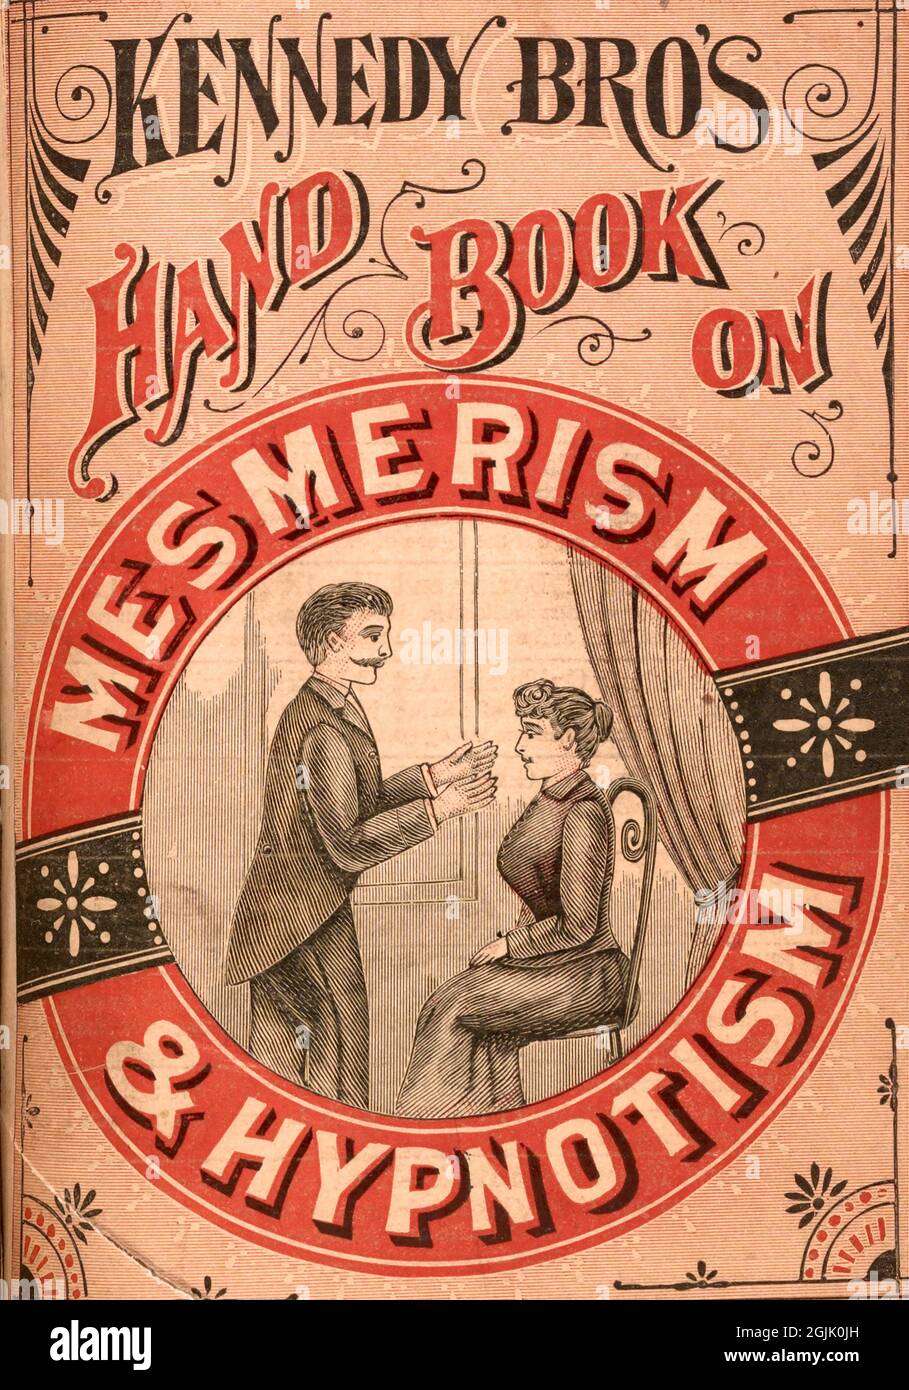 Livre de Kennedy Bros. Sur le mésmérisme et l'hypnotisme 1883 Banque D'Images